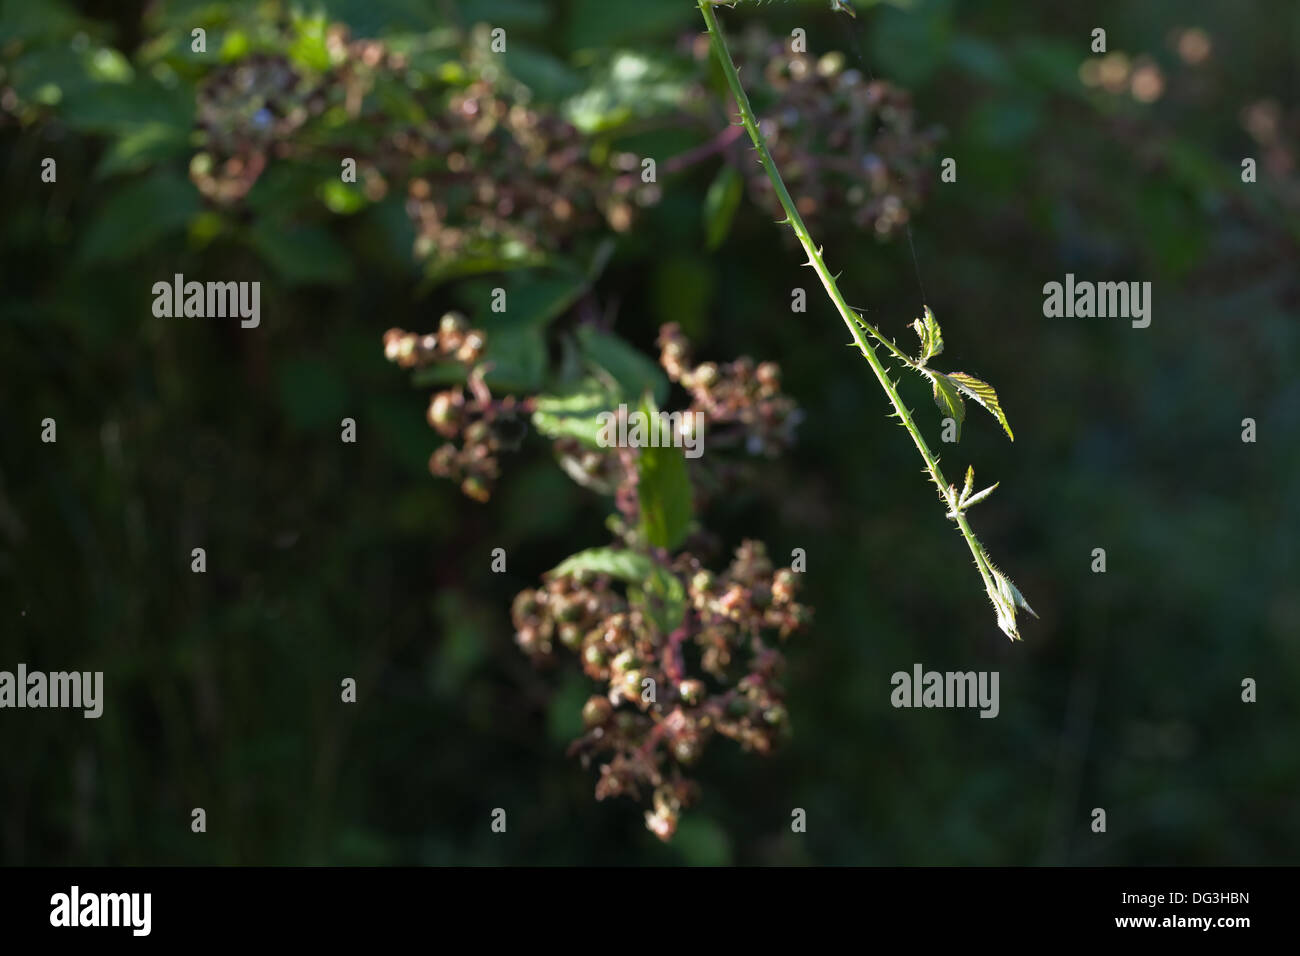 Blackberry, ou de ronce (Rubus fruticosus). Nouvelle croissance vigoureuse, qui permet d'étendre, d'enracinement et de former de nouvelles d'une plante. Banque D'Images